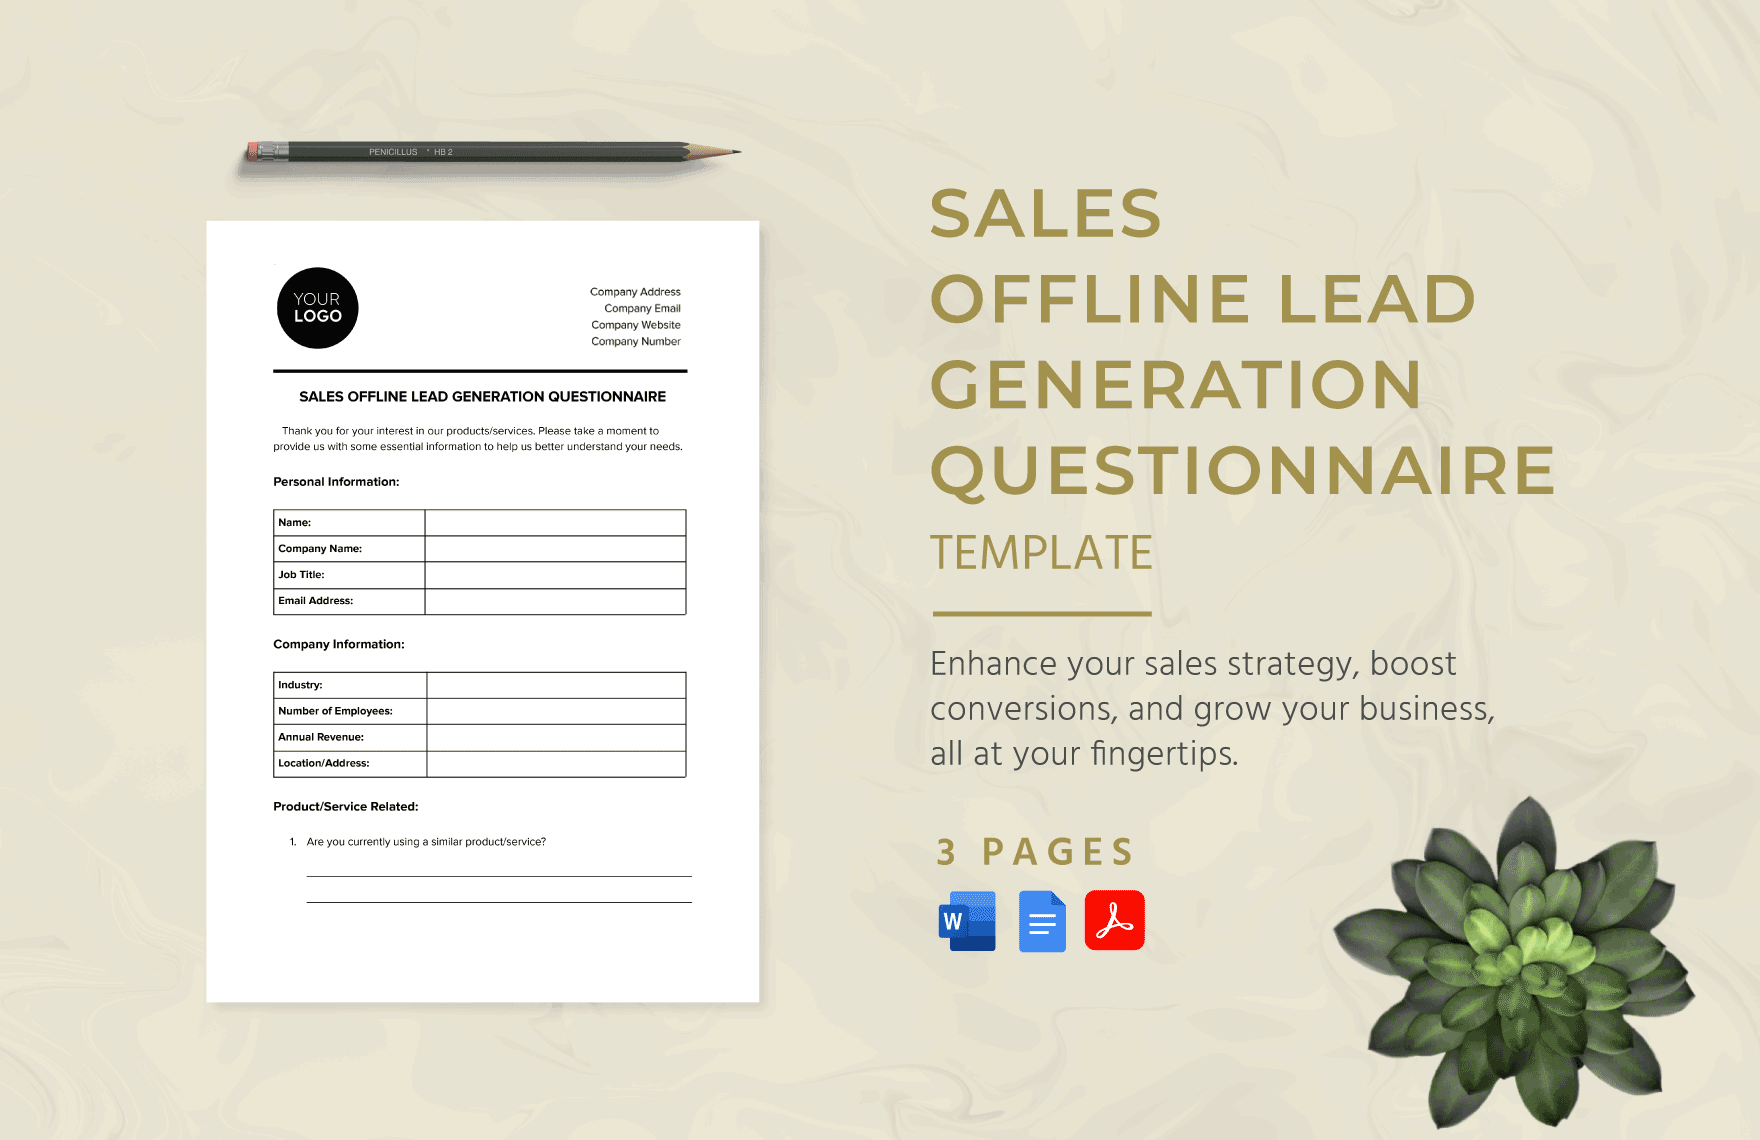 Sales Offline Lead Generation Questionnaire Template